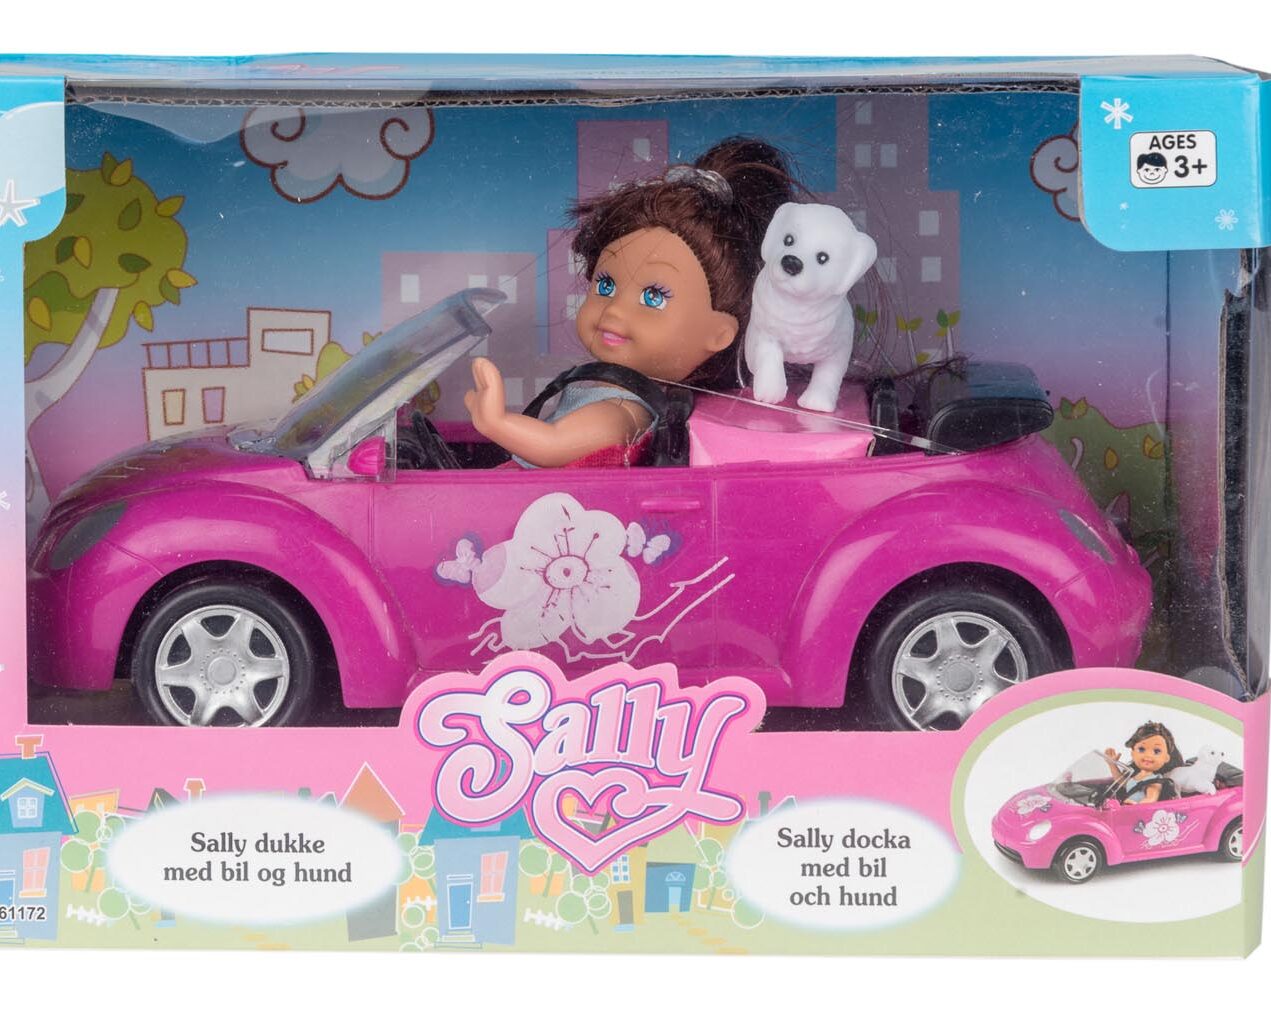 Sally docka med bil och hund